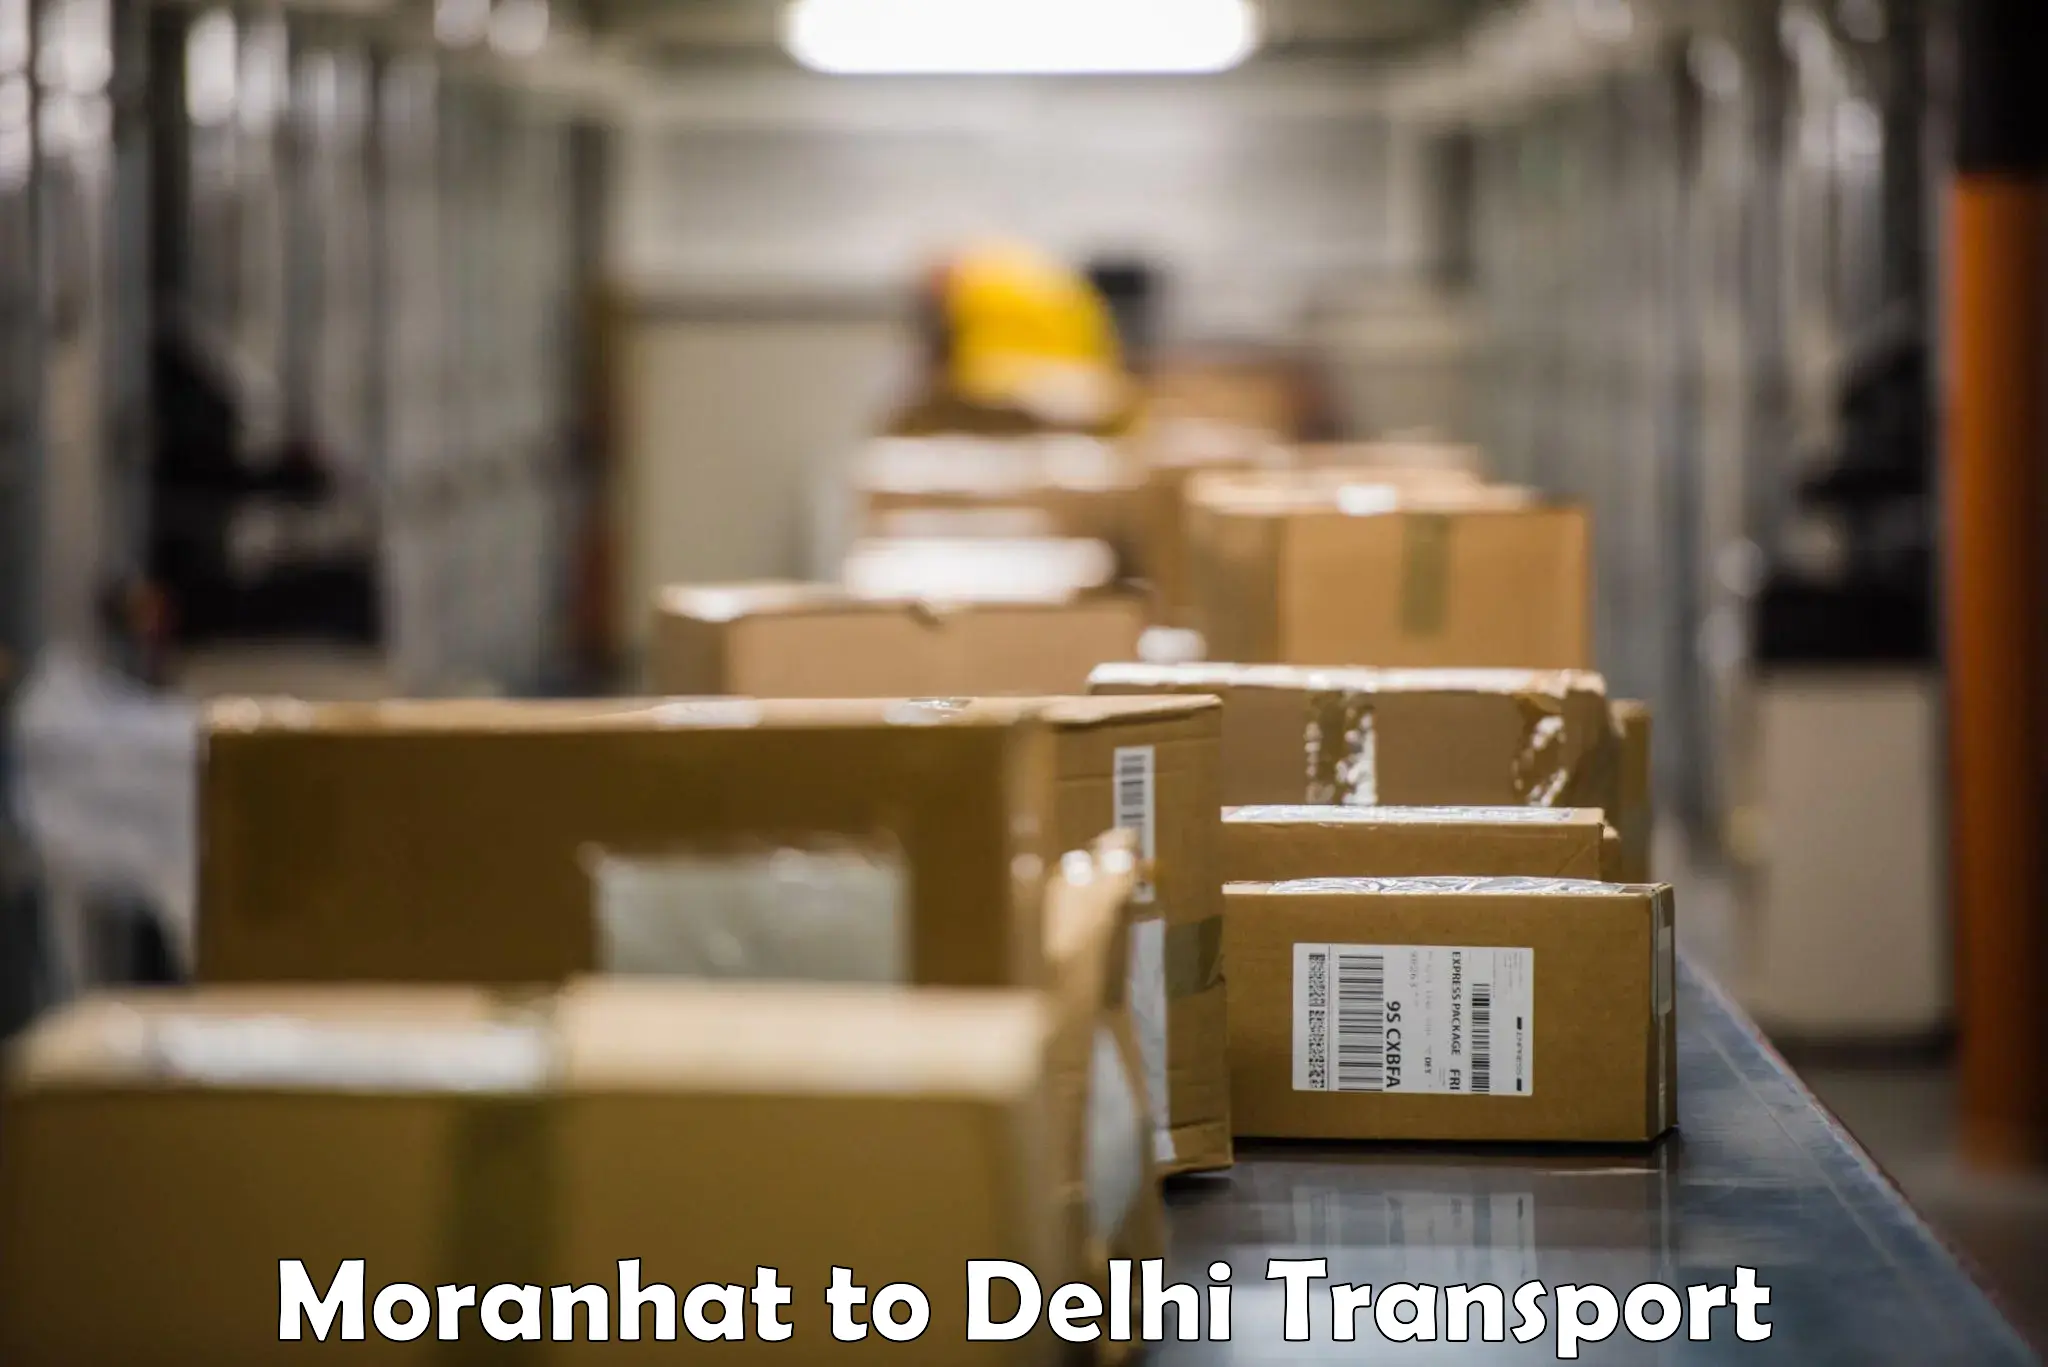 Bike transport service Moranhat to IIT Delhi